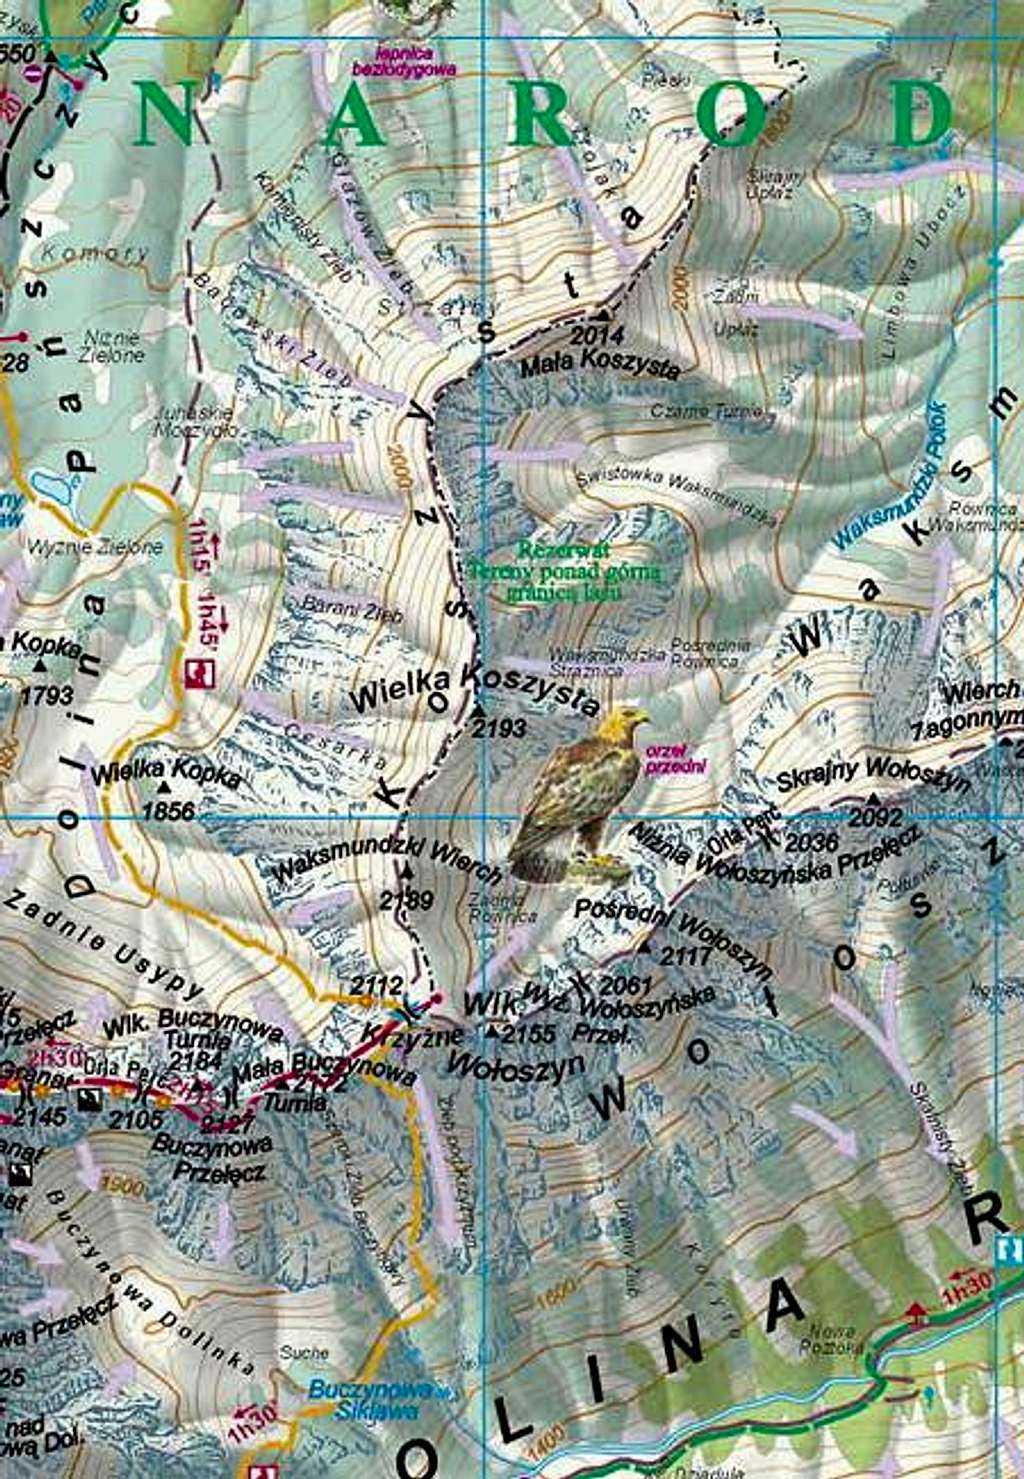 Koszysta ridge - Map of the...